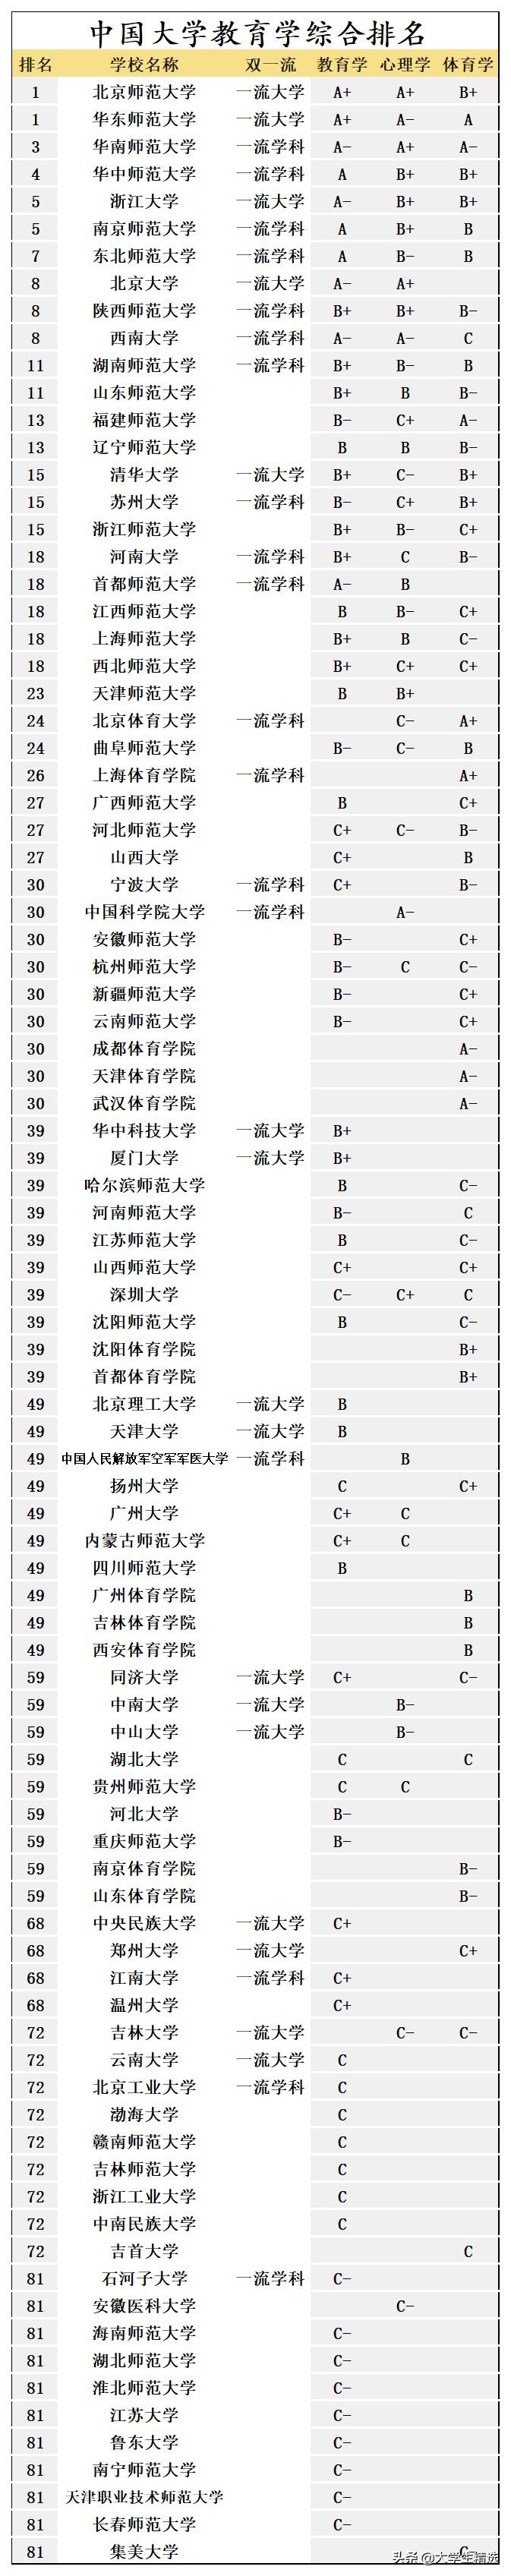 教育学大学排名 中国大学教育学综合排名榜